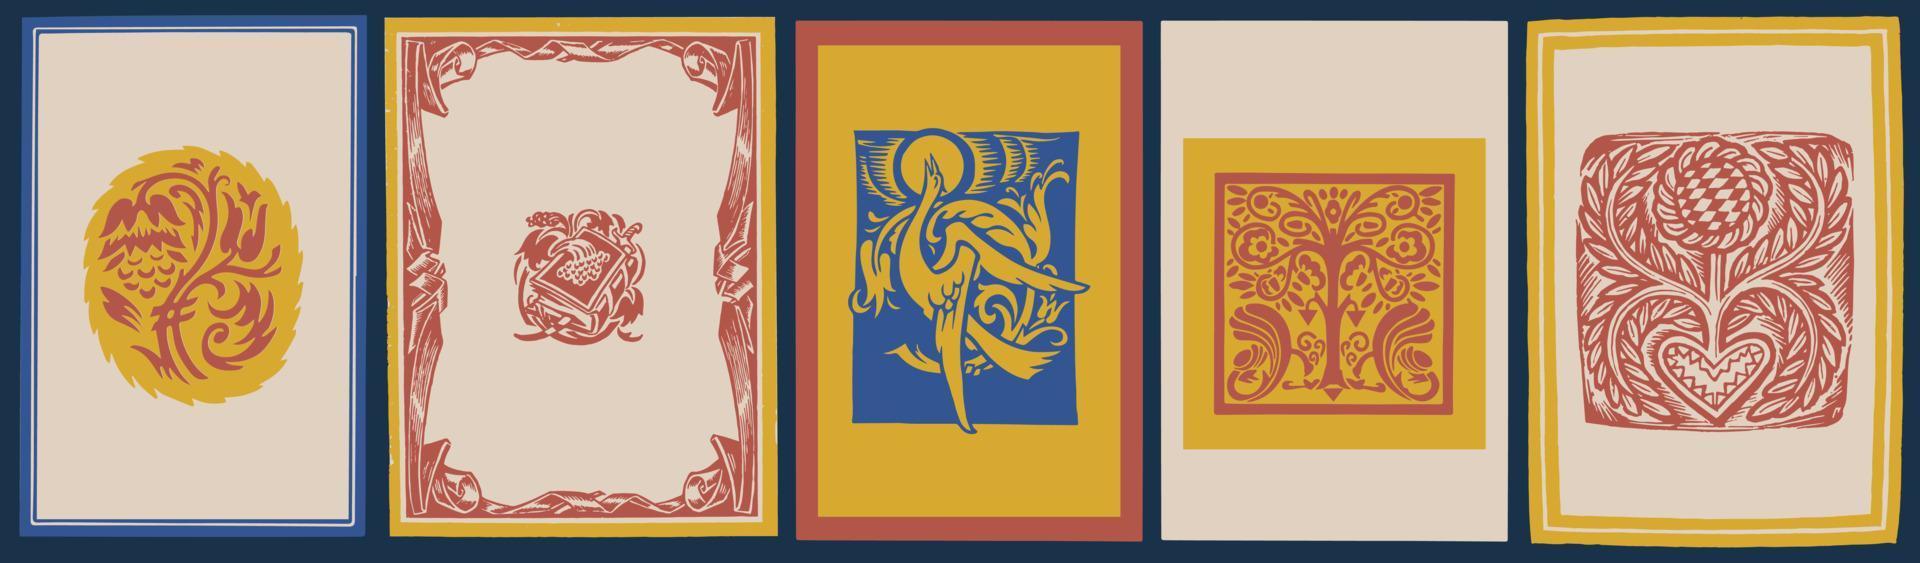 gravures sur bois ukrainiennes traditionnelles. culture et arts ukrainiens. modèle de couverture de livre, invitation, carte, voeux. vecteur